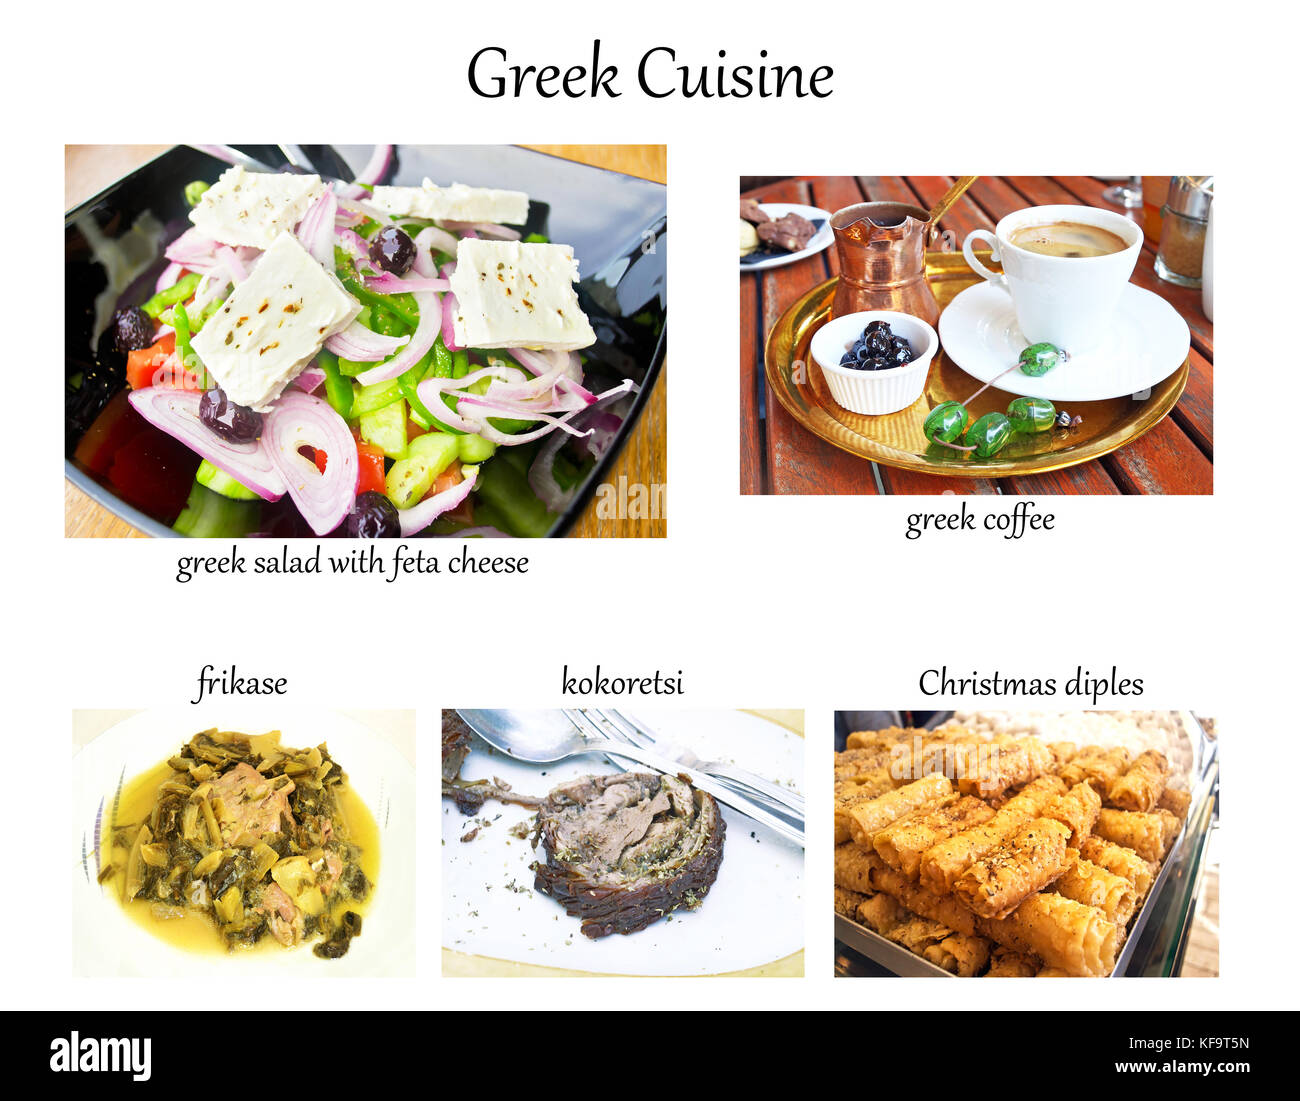 Collage mit griechischer Küche - Kaffee, Salat, frikase, kokoretsi, Weihnachten diples Stockfoto